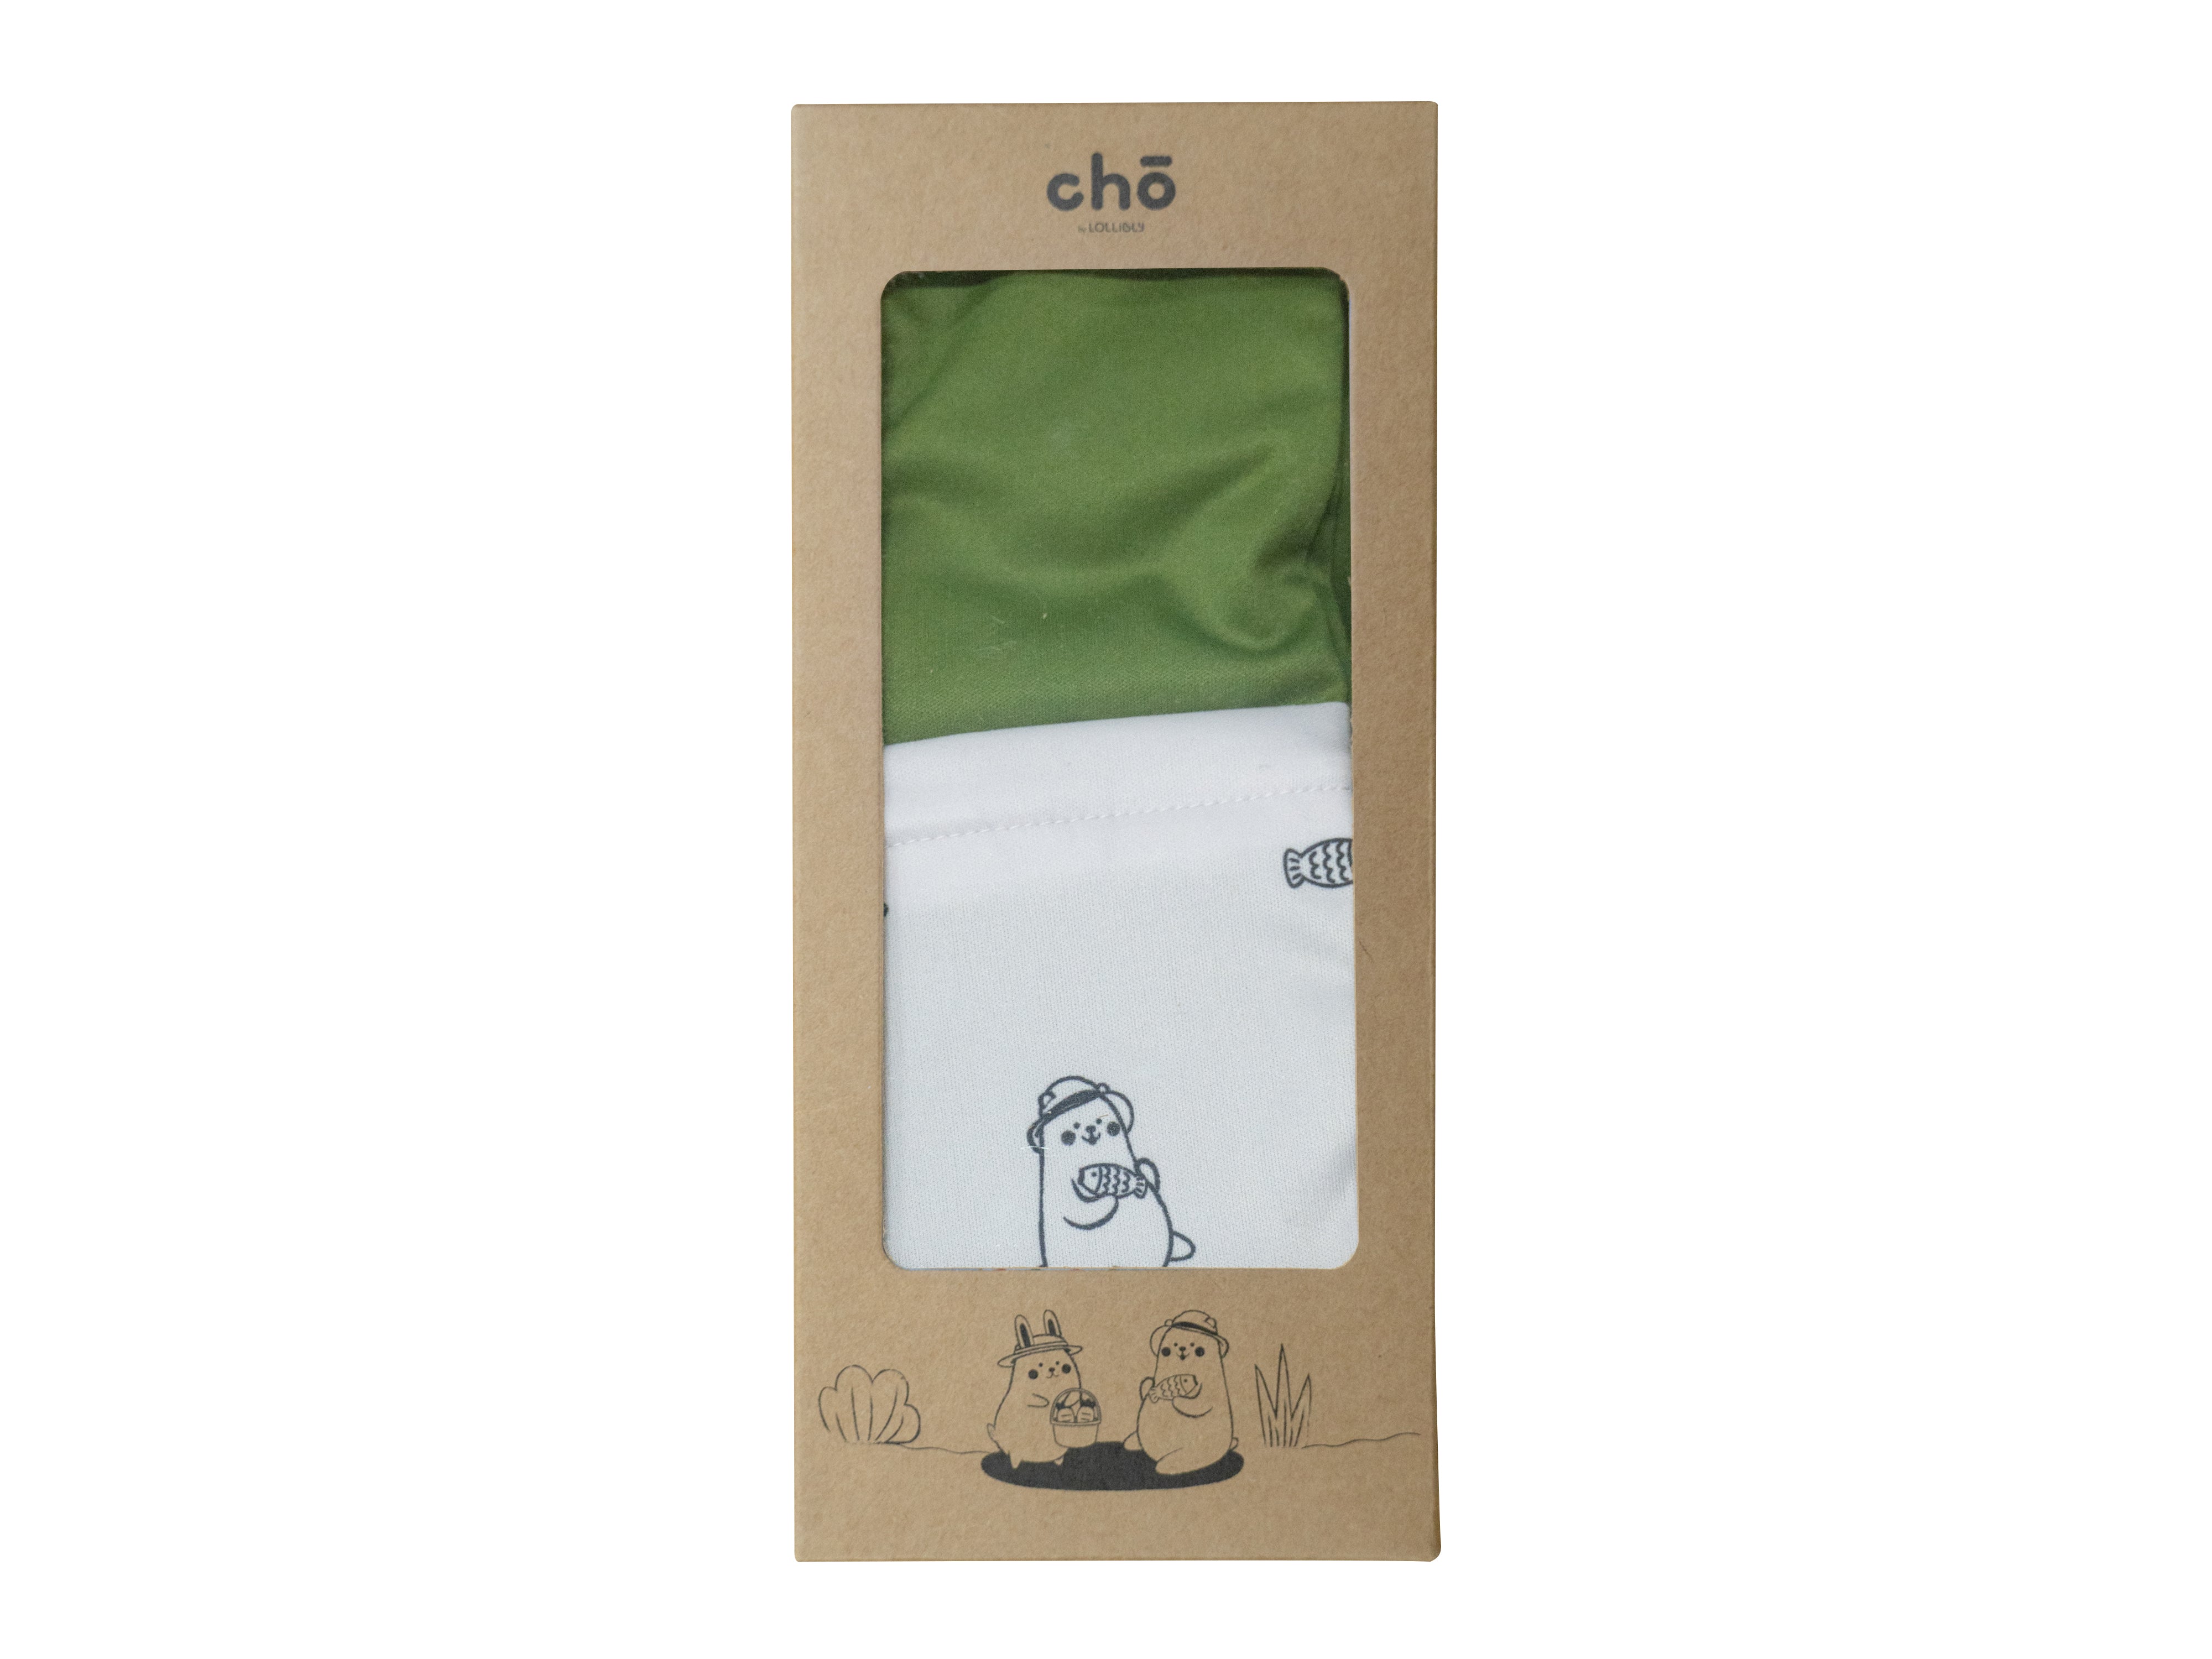 maru bear olive waterproof diaper wet bag in brown packaging